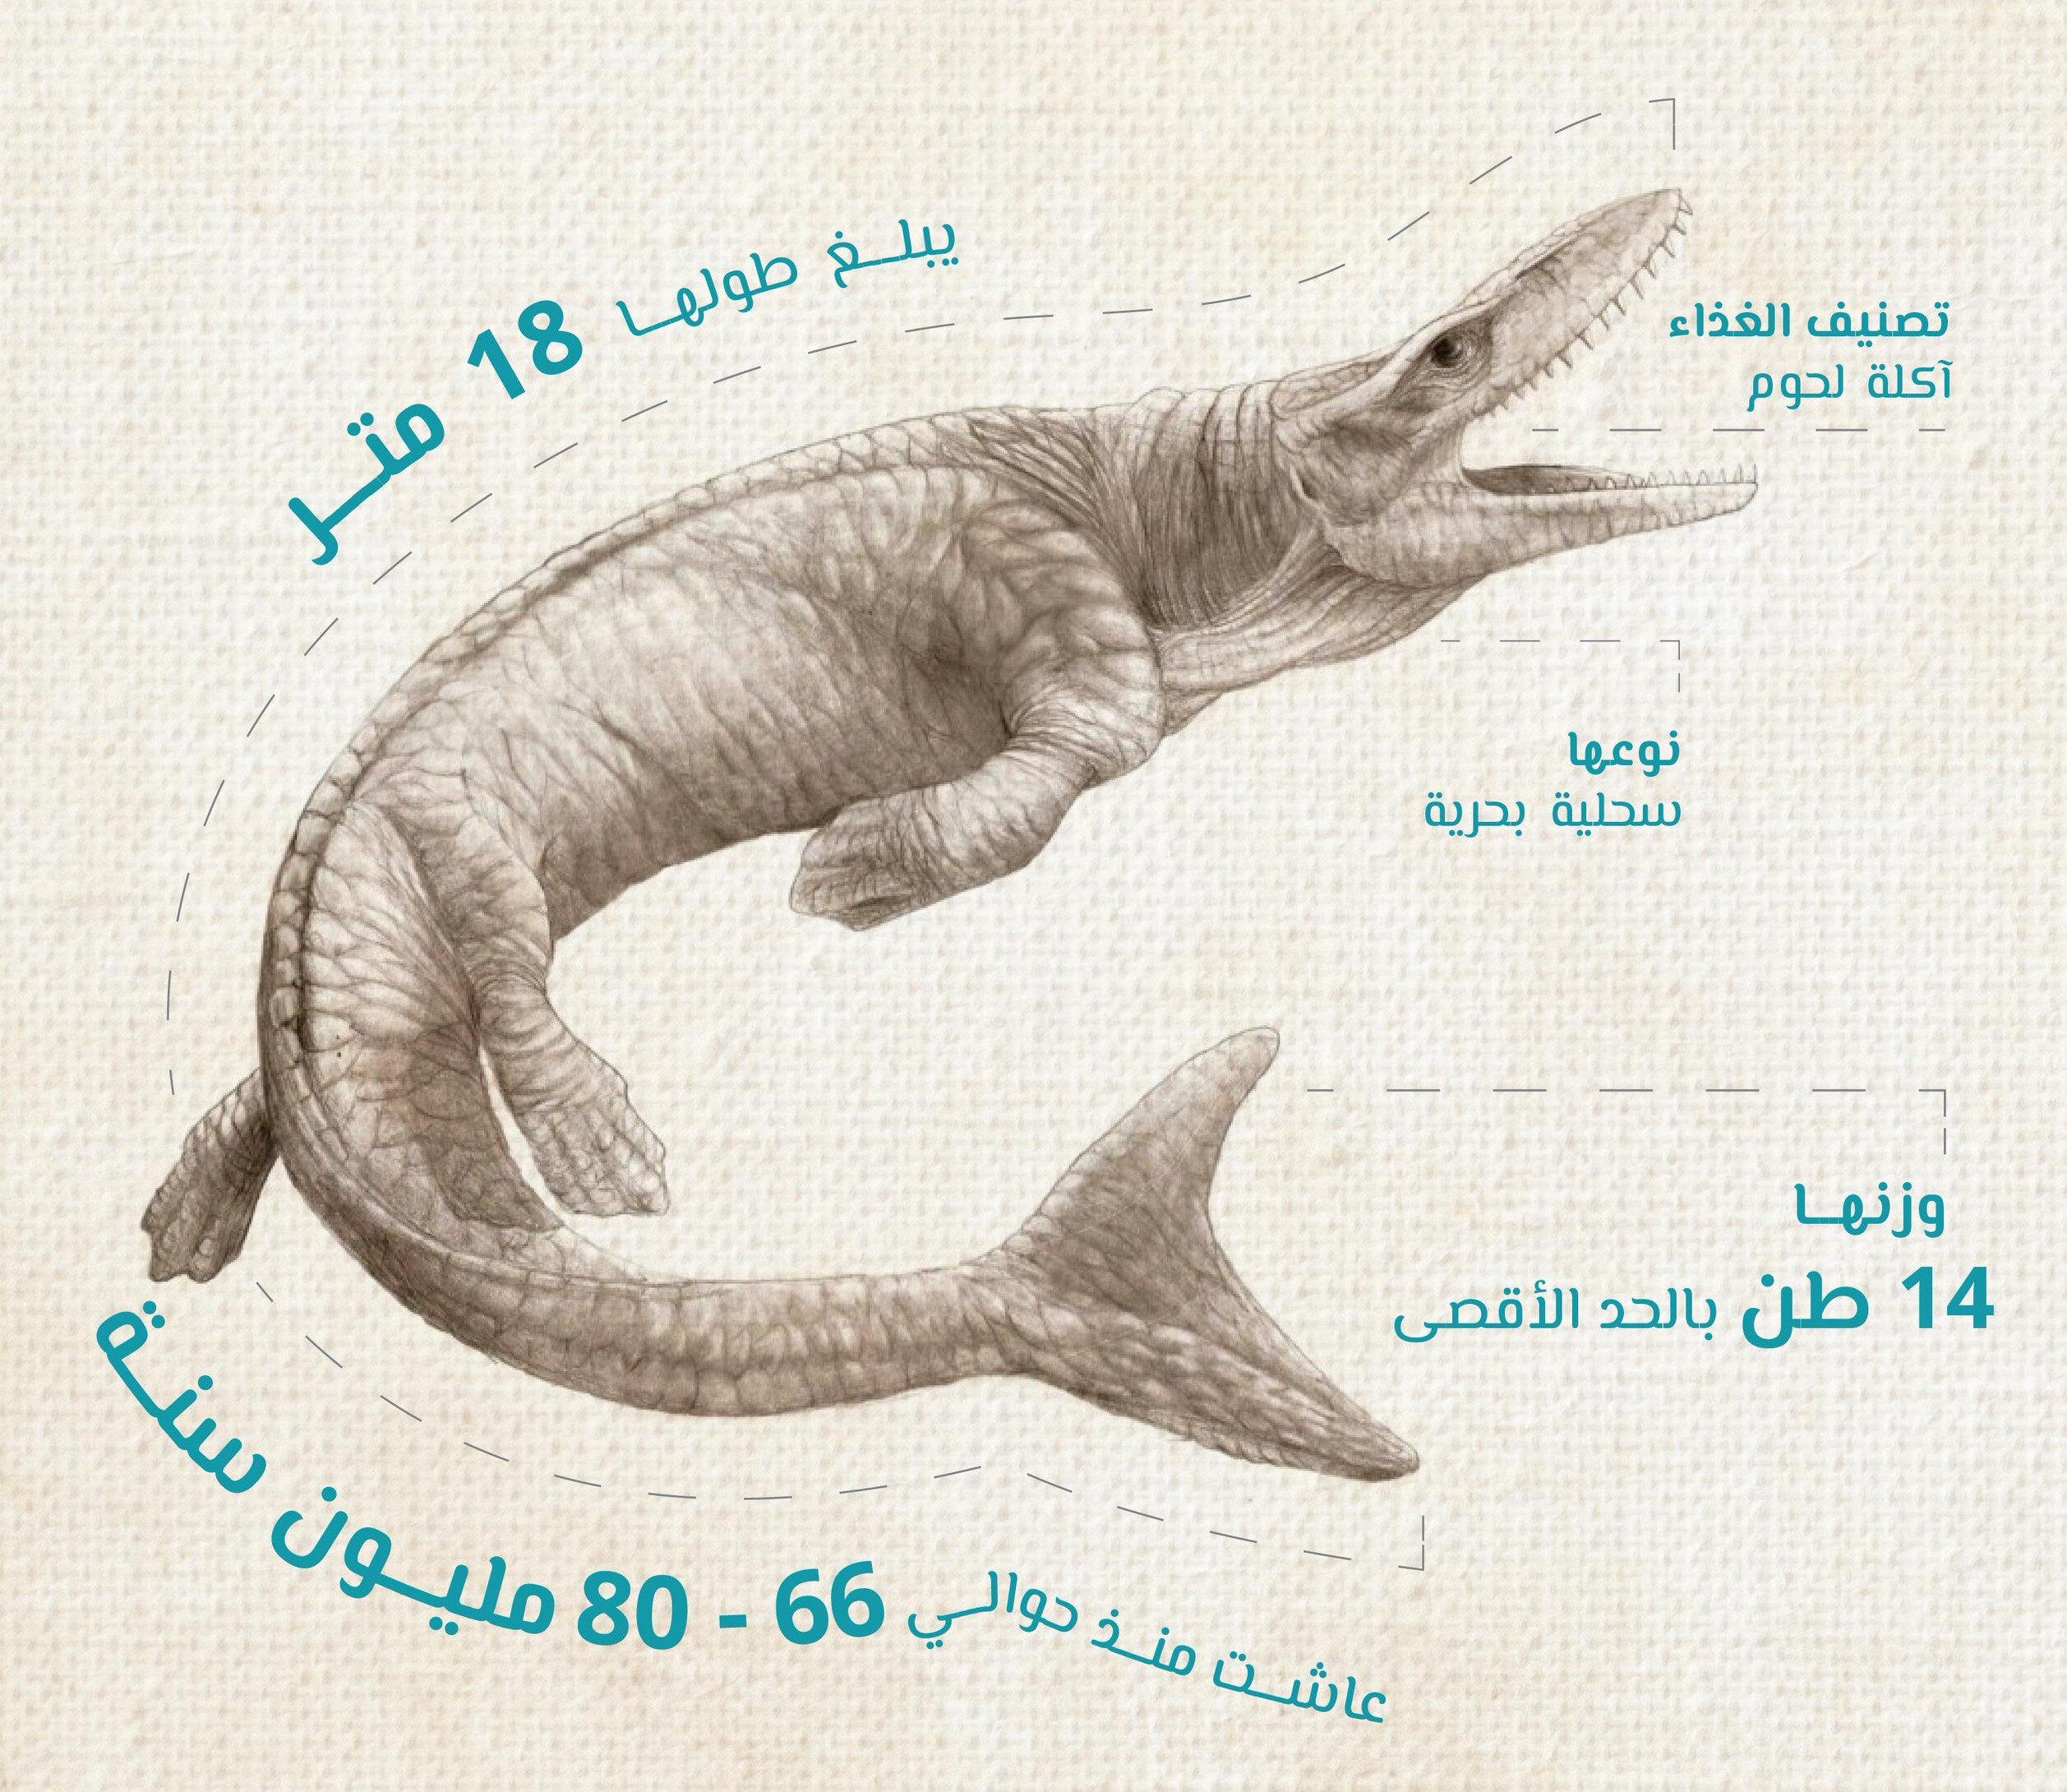 صورة تقريبية لحيوان الموساسور الذي اكتشفت بقاياه غرب السعودية (شركة البحر الأحمر للتطوير)